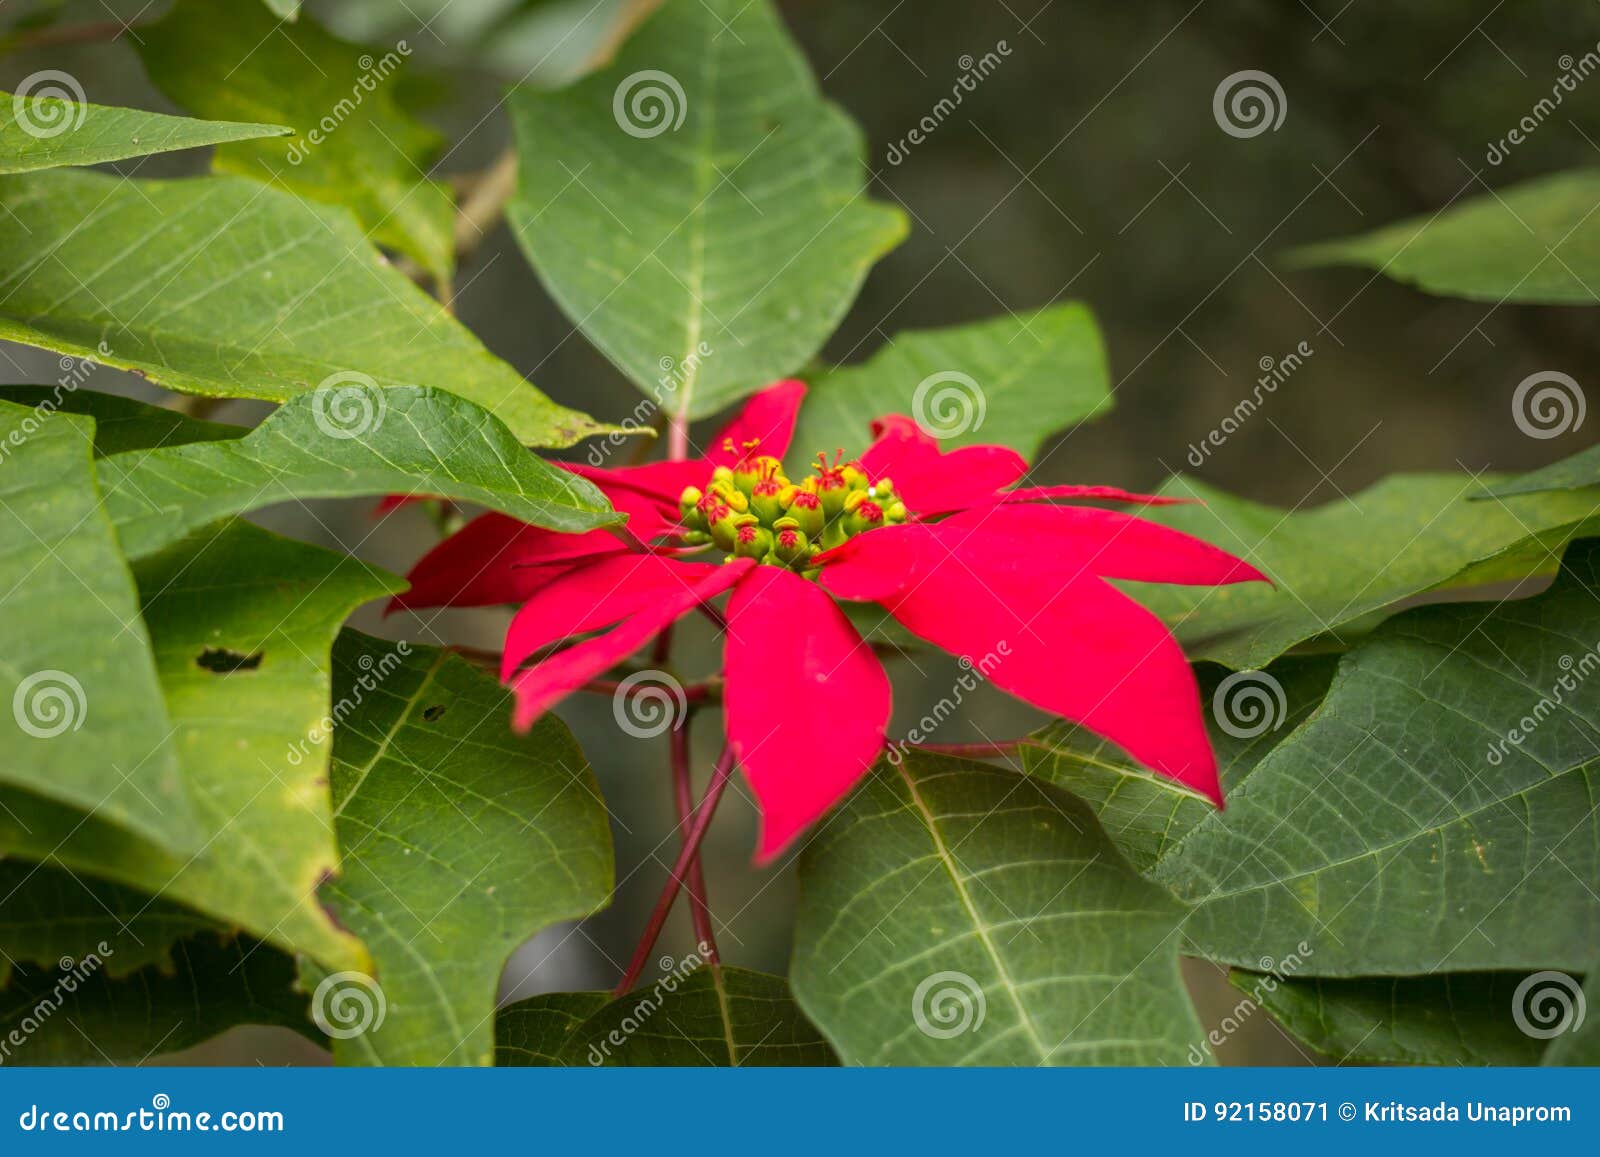 Primo piano dei fiori rossi della stella di Natale. Il primo piano della stella di Natale rossa fiorisce l'euphorbia pulcherrima